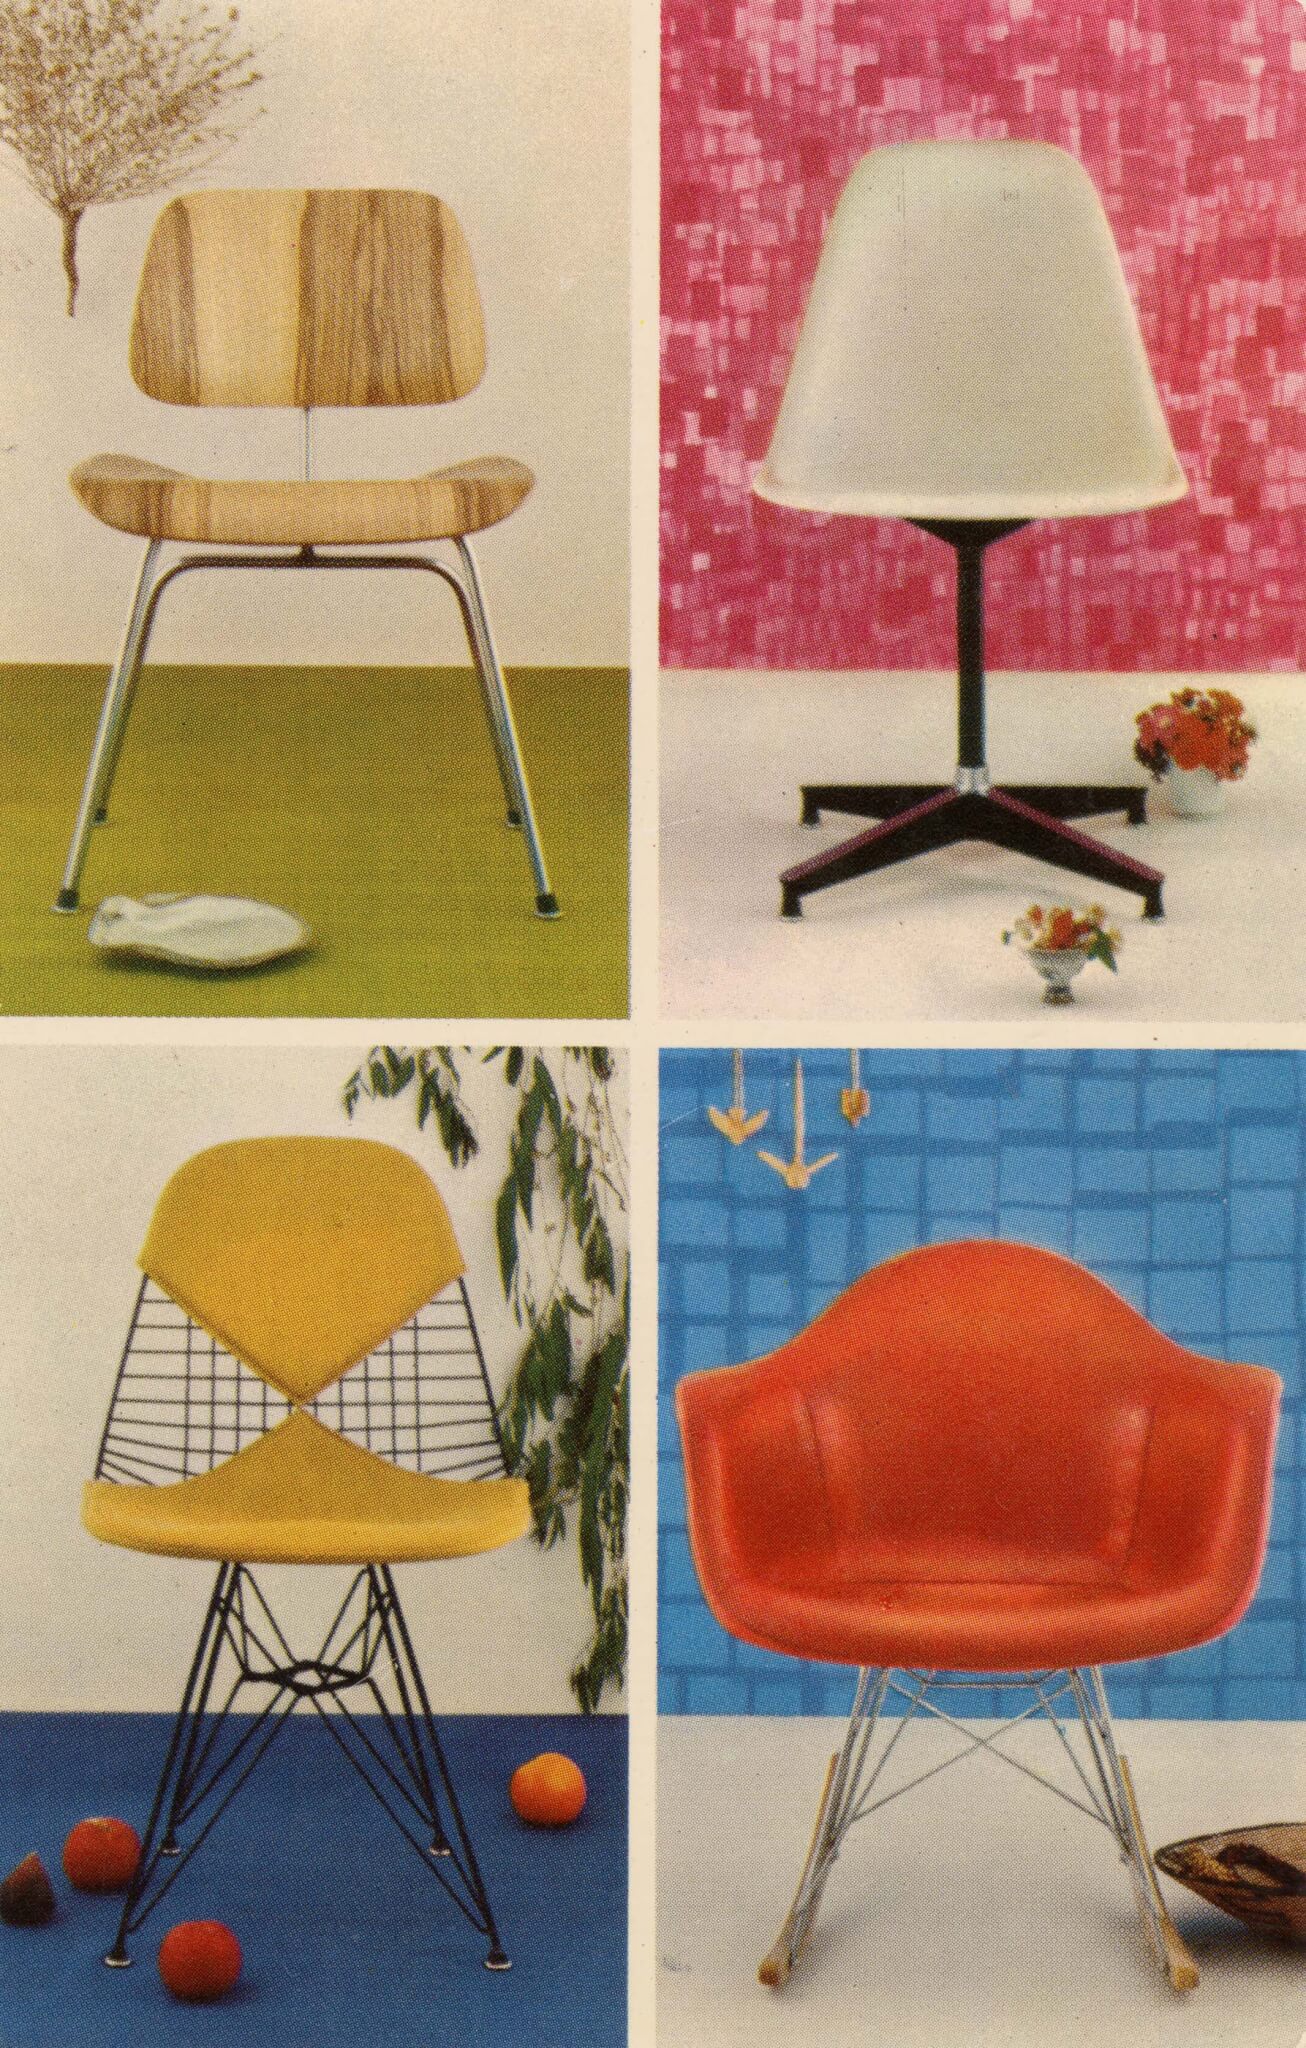 有四把椅子设计的明信片